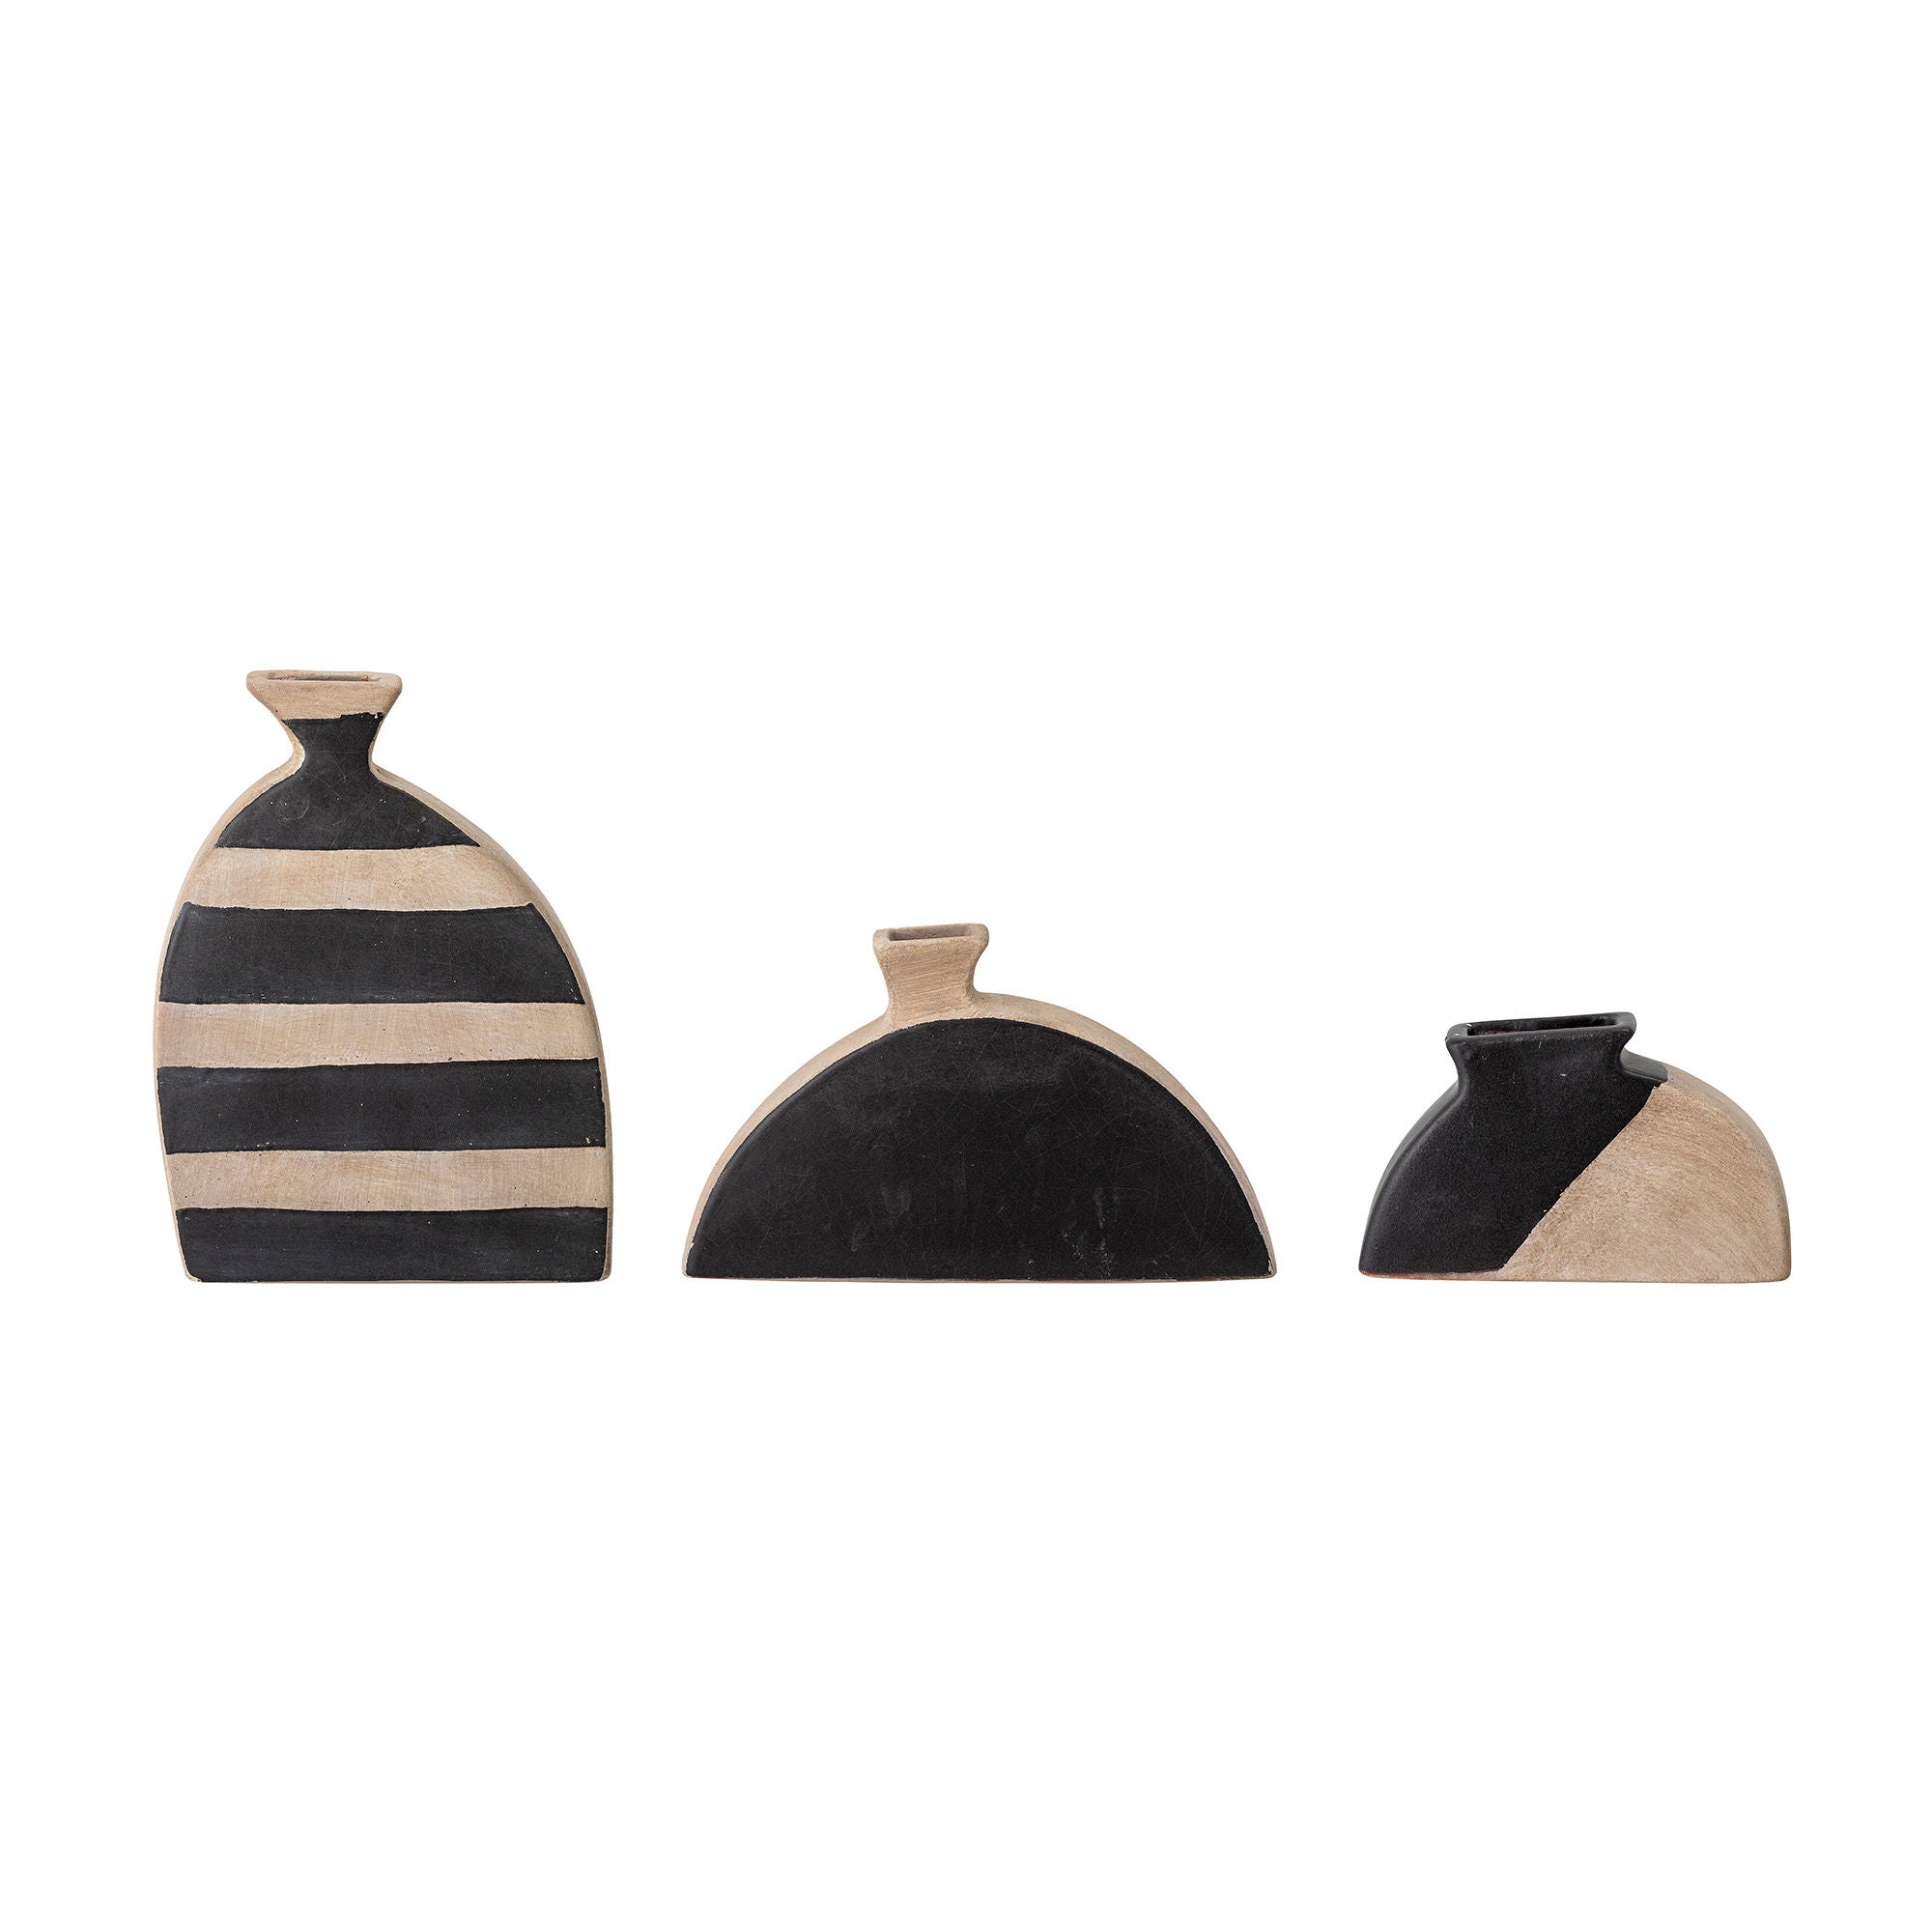 Das Set "Nezha" besteht aus drei grafischen Deko-Vasen aus schwarzer Terrakotta, die jeweils individuell von Hand verziert sind und einen modernen Akzent in jedem Raum setzen.